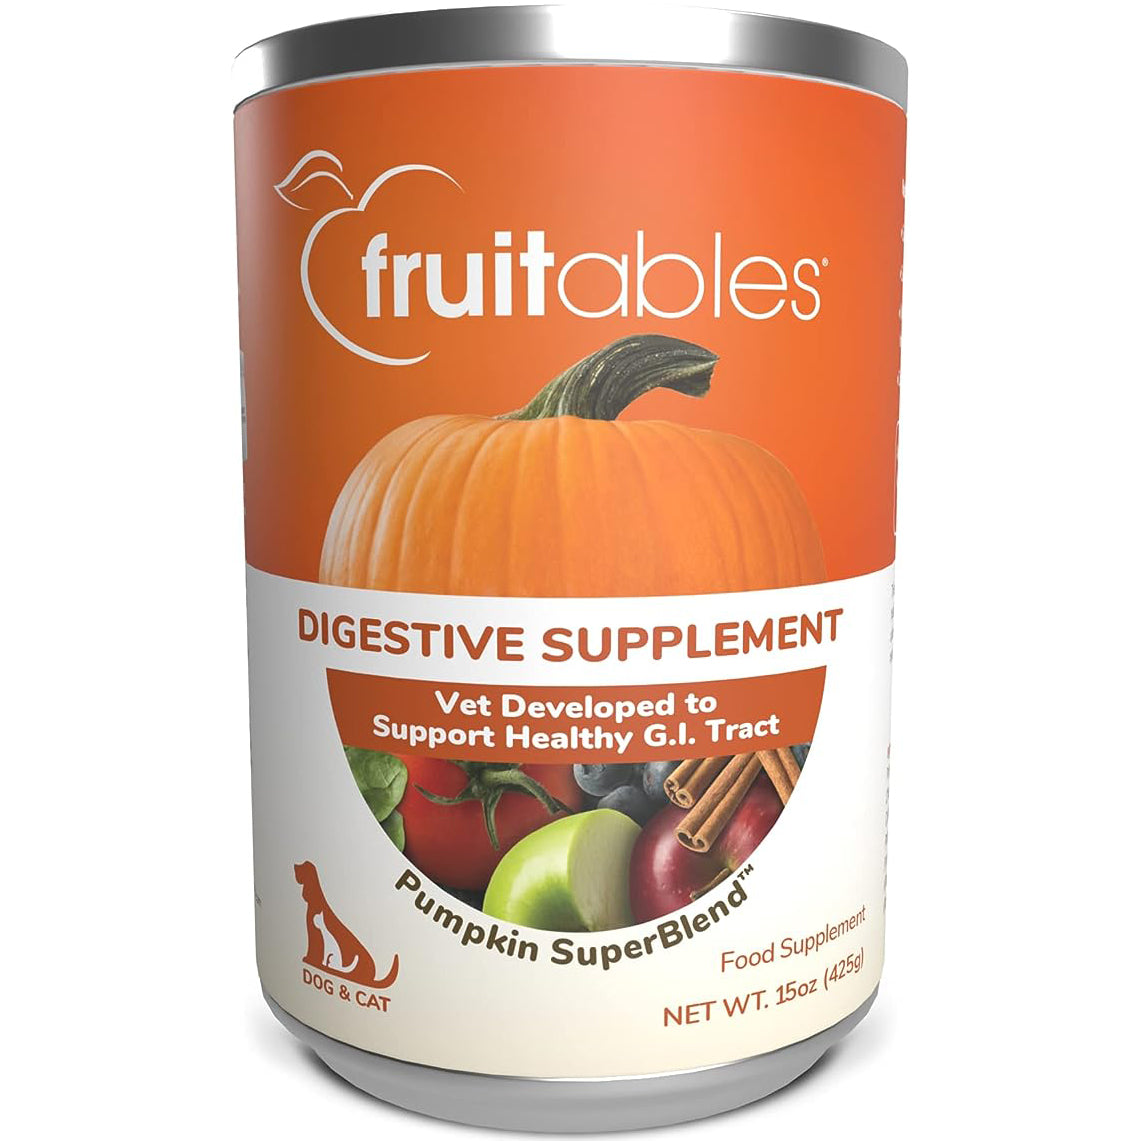 Fruitables Switch Super Blend Dog Food Supplement